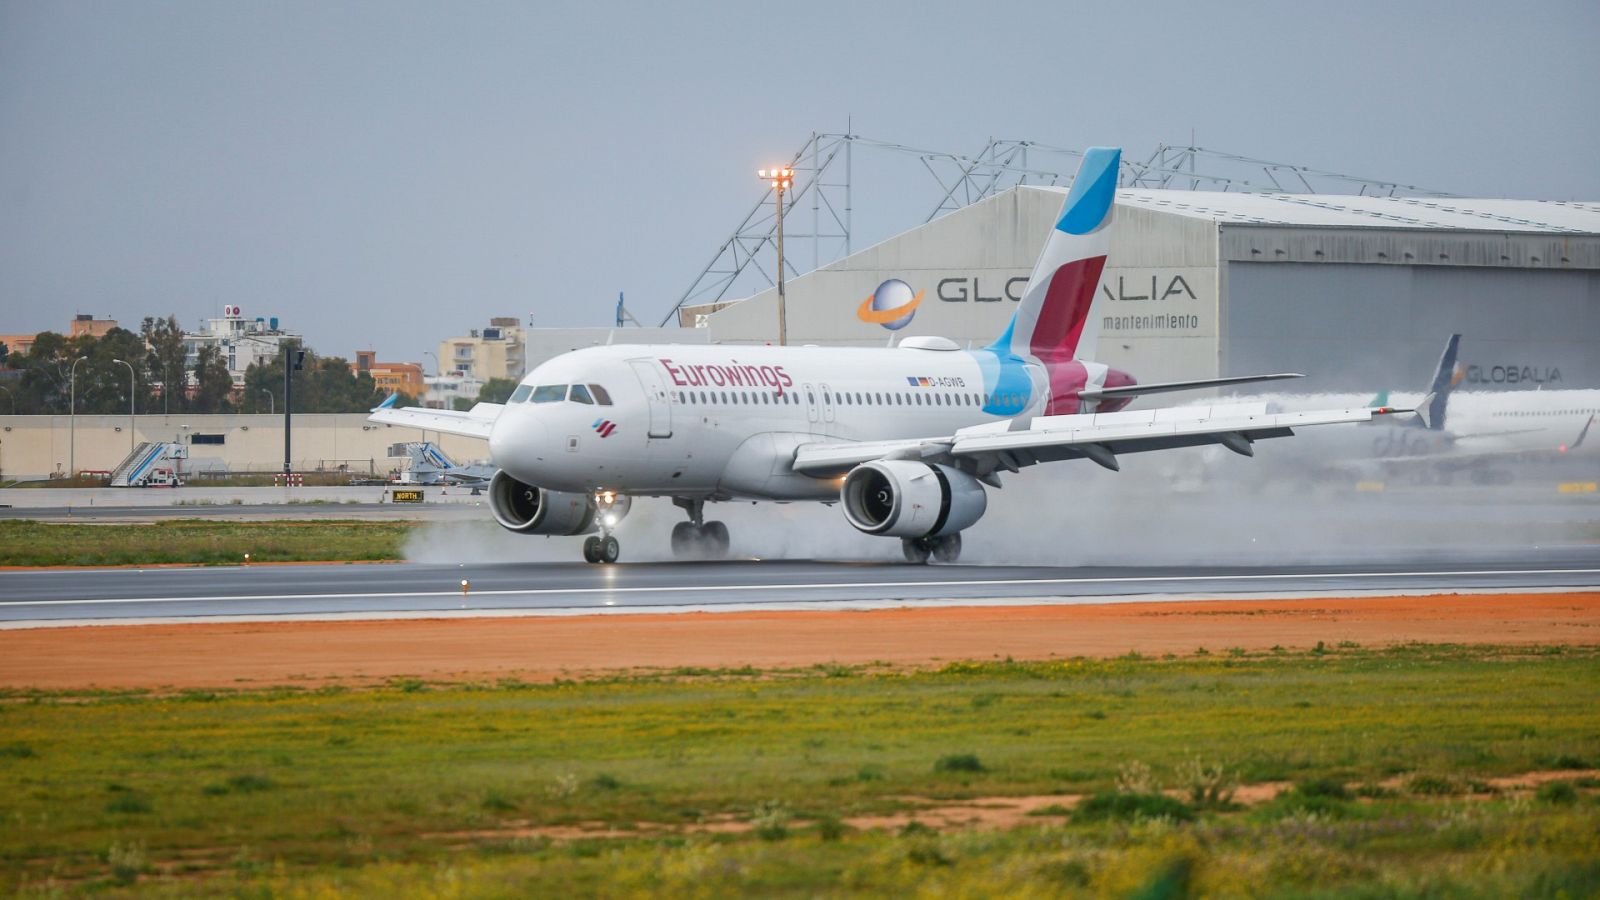 Un avión de la compañía Eurowings aterriza en el aeropuerto de Palma de Mallorca